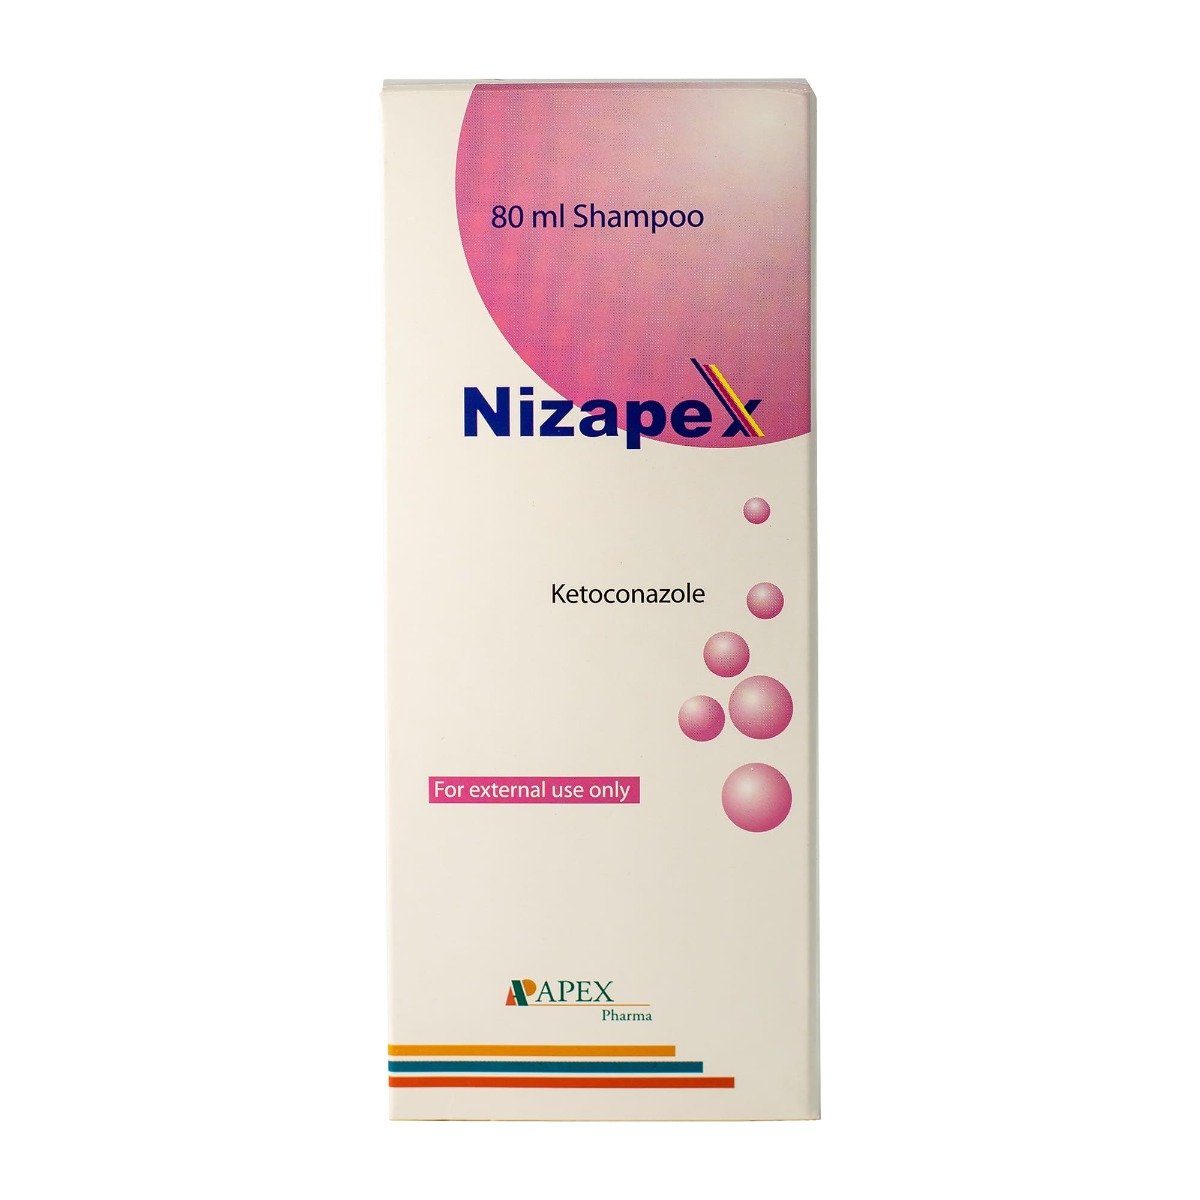 Nizapex Shampoo - 80 ml - Bloom Pharmacy